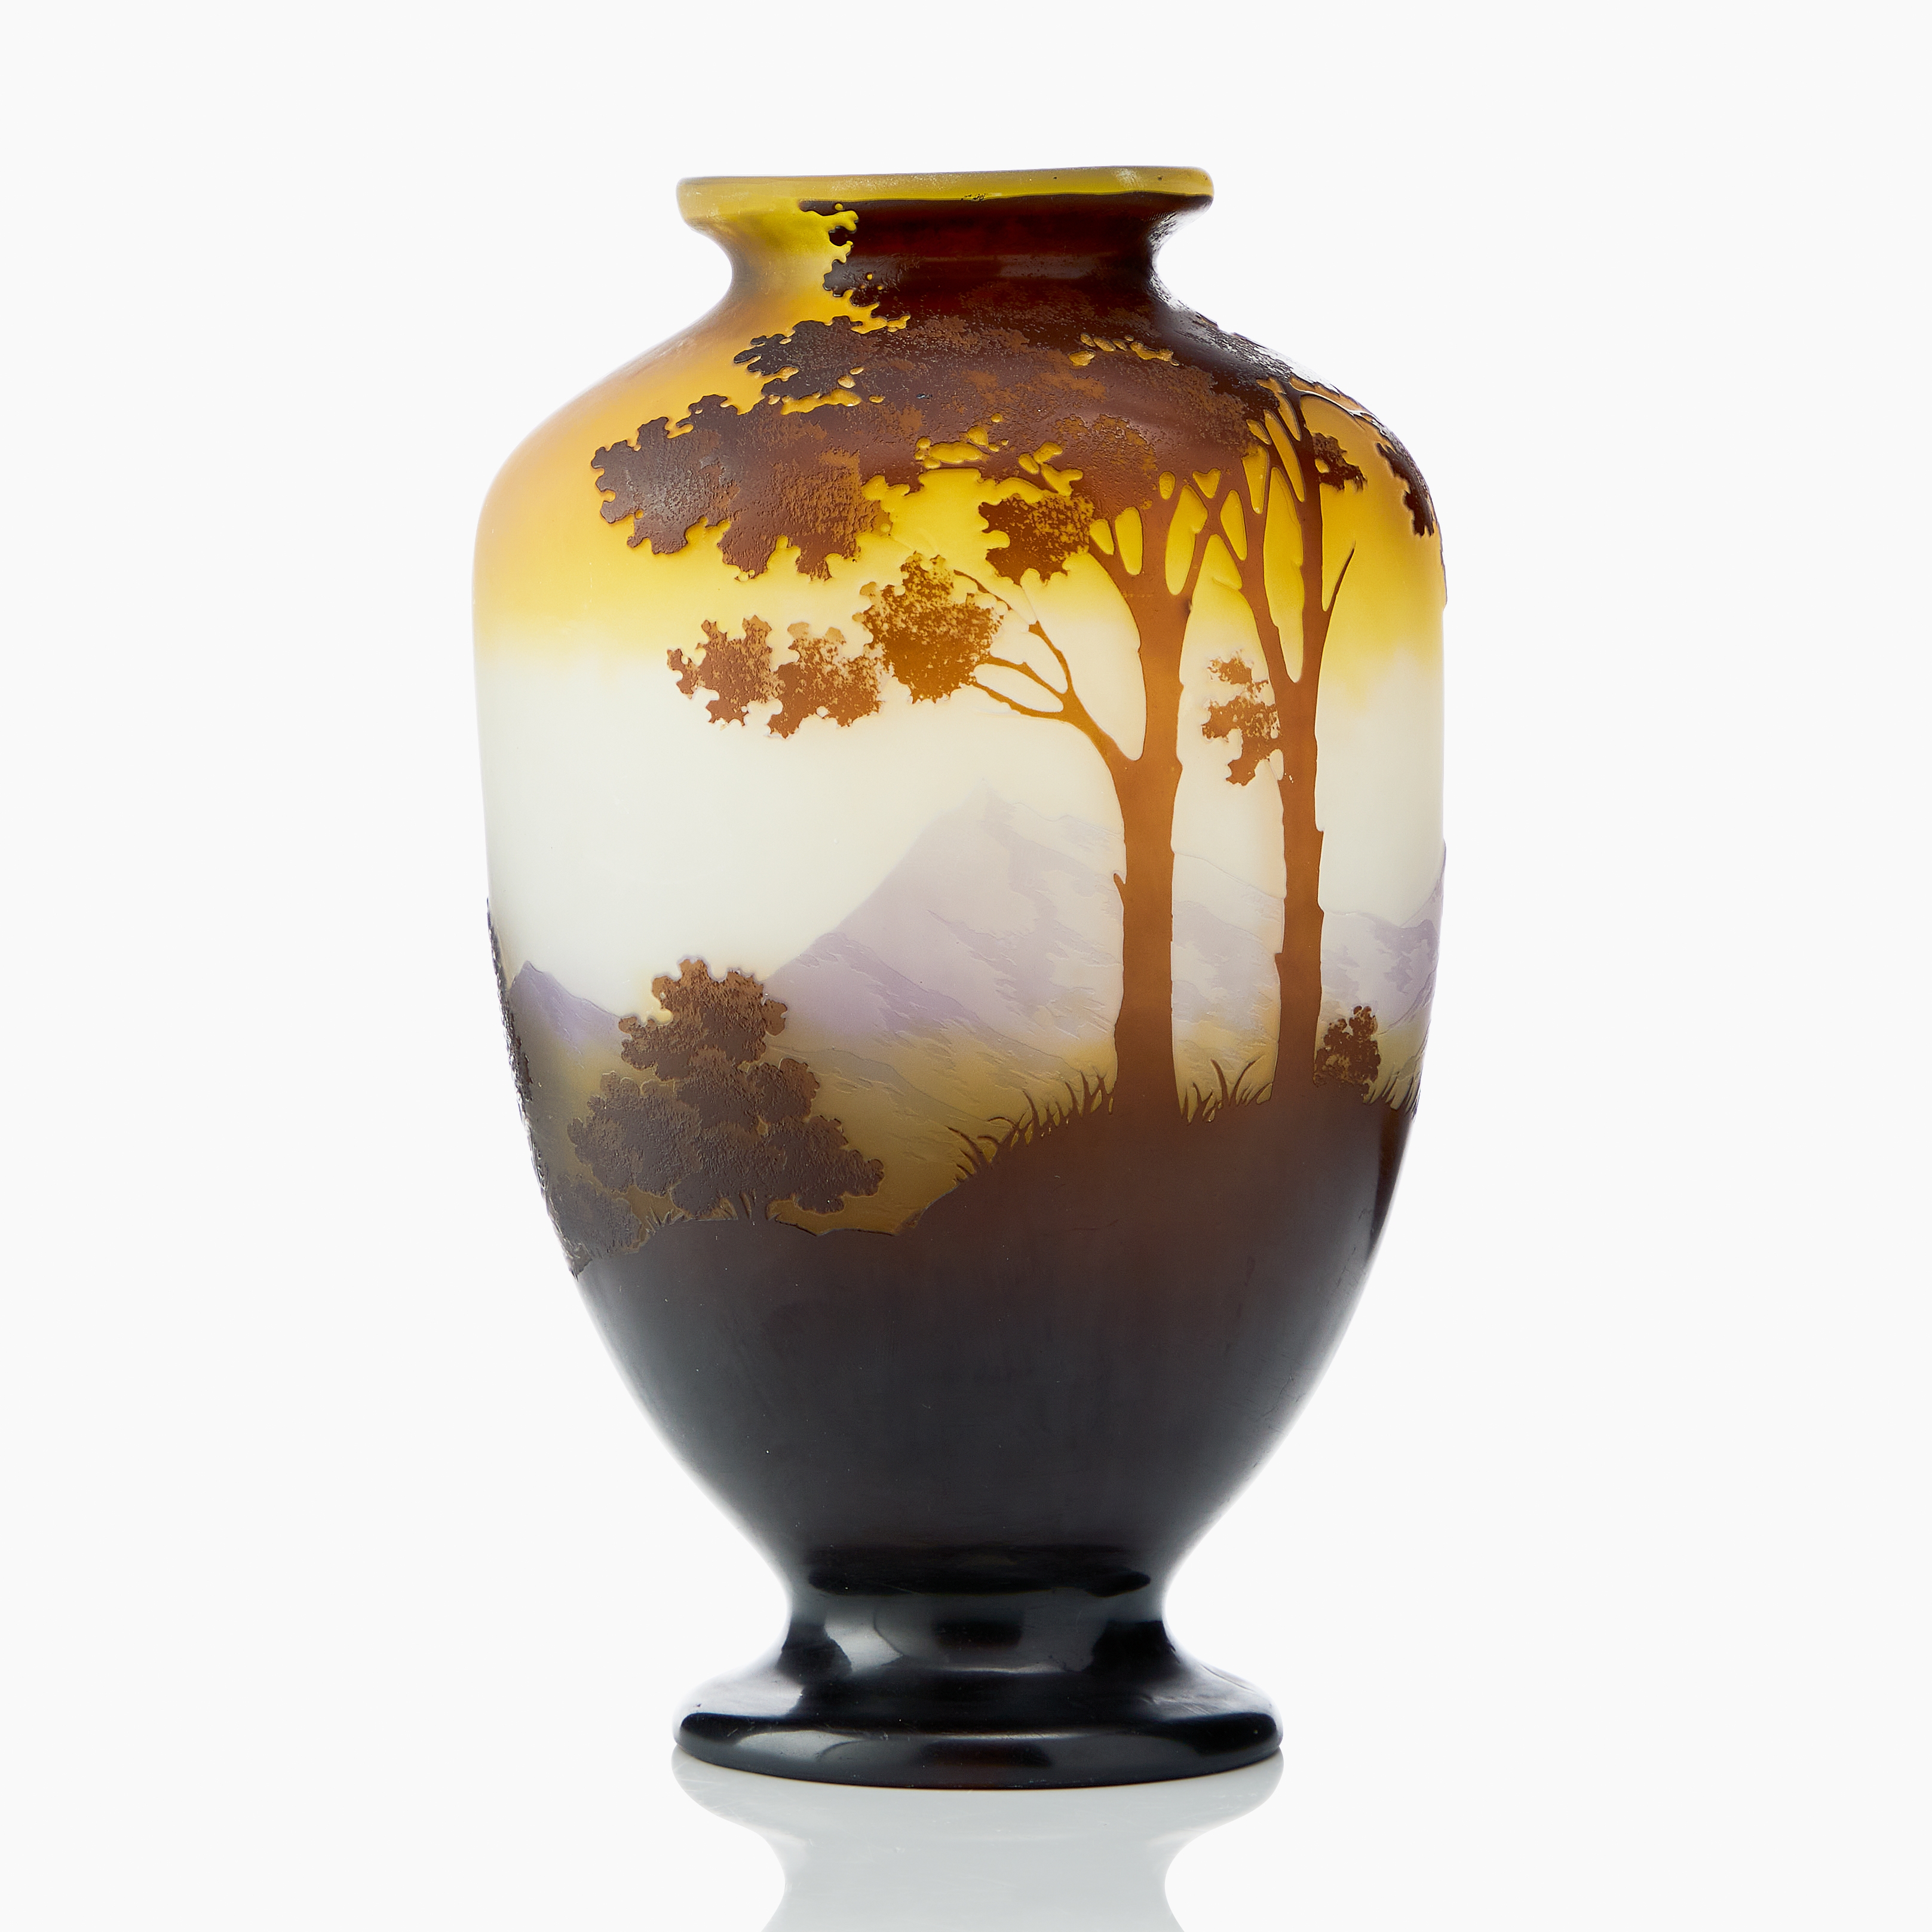 Vase by Emile Gallé